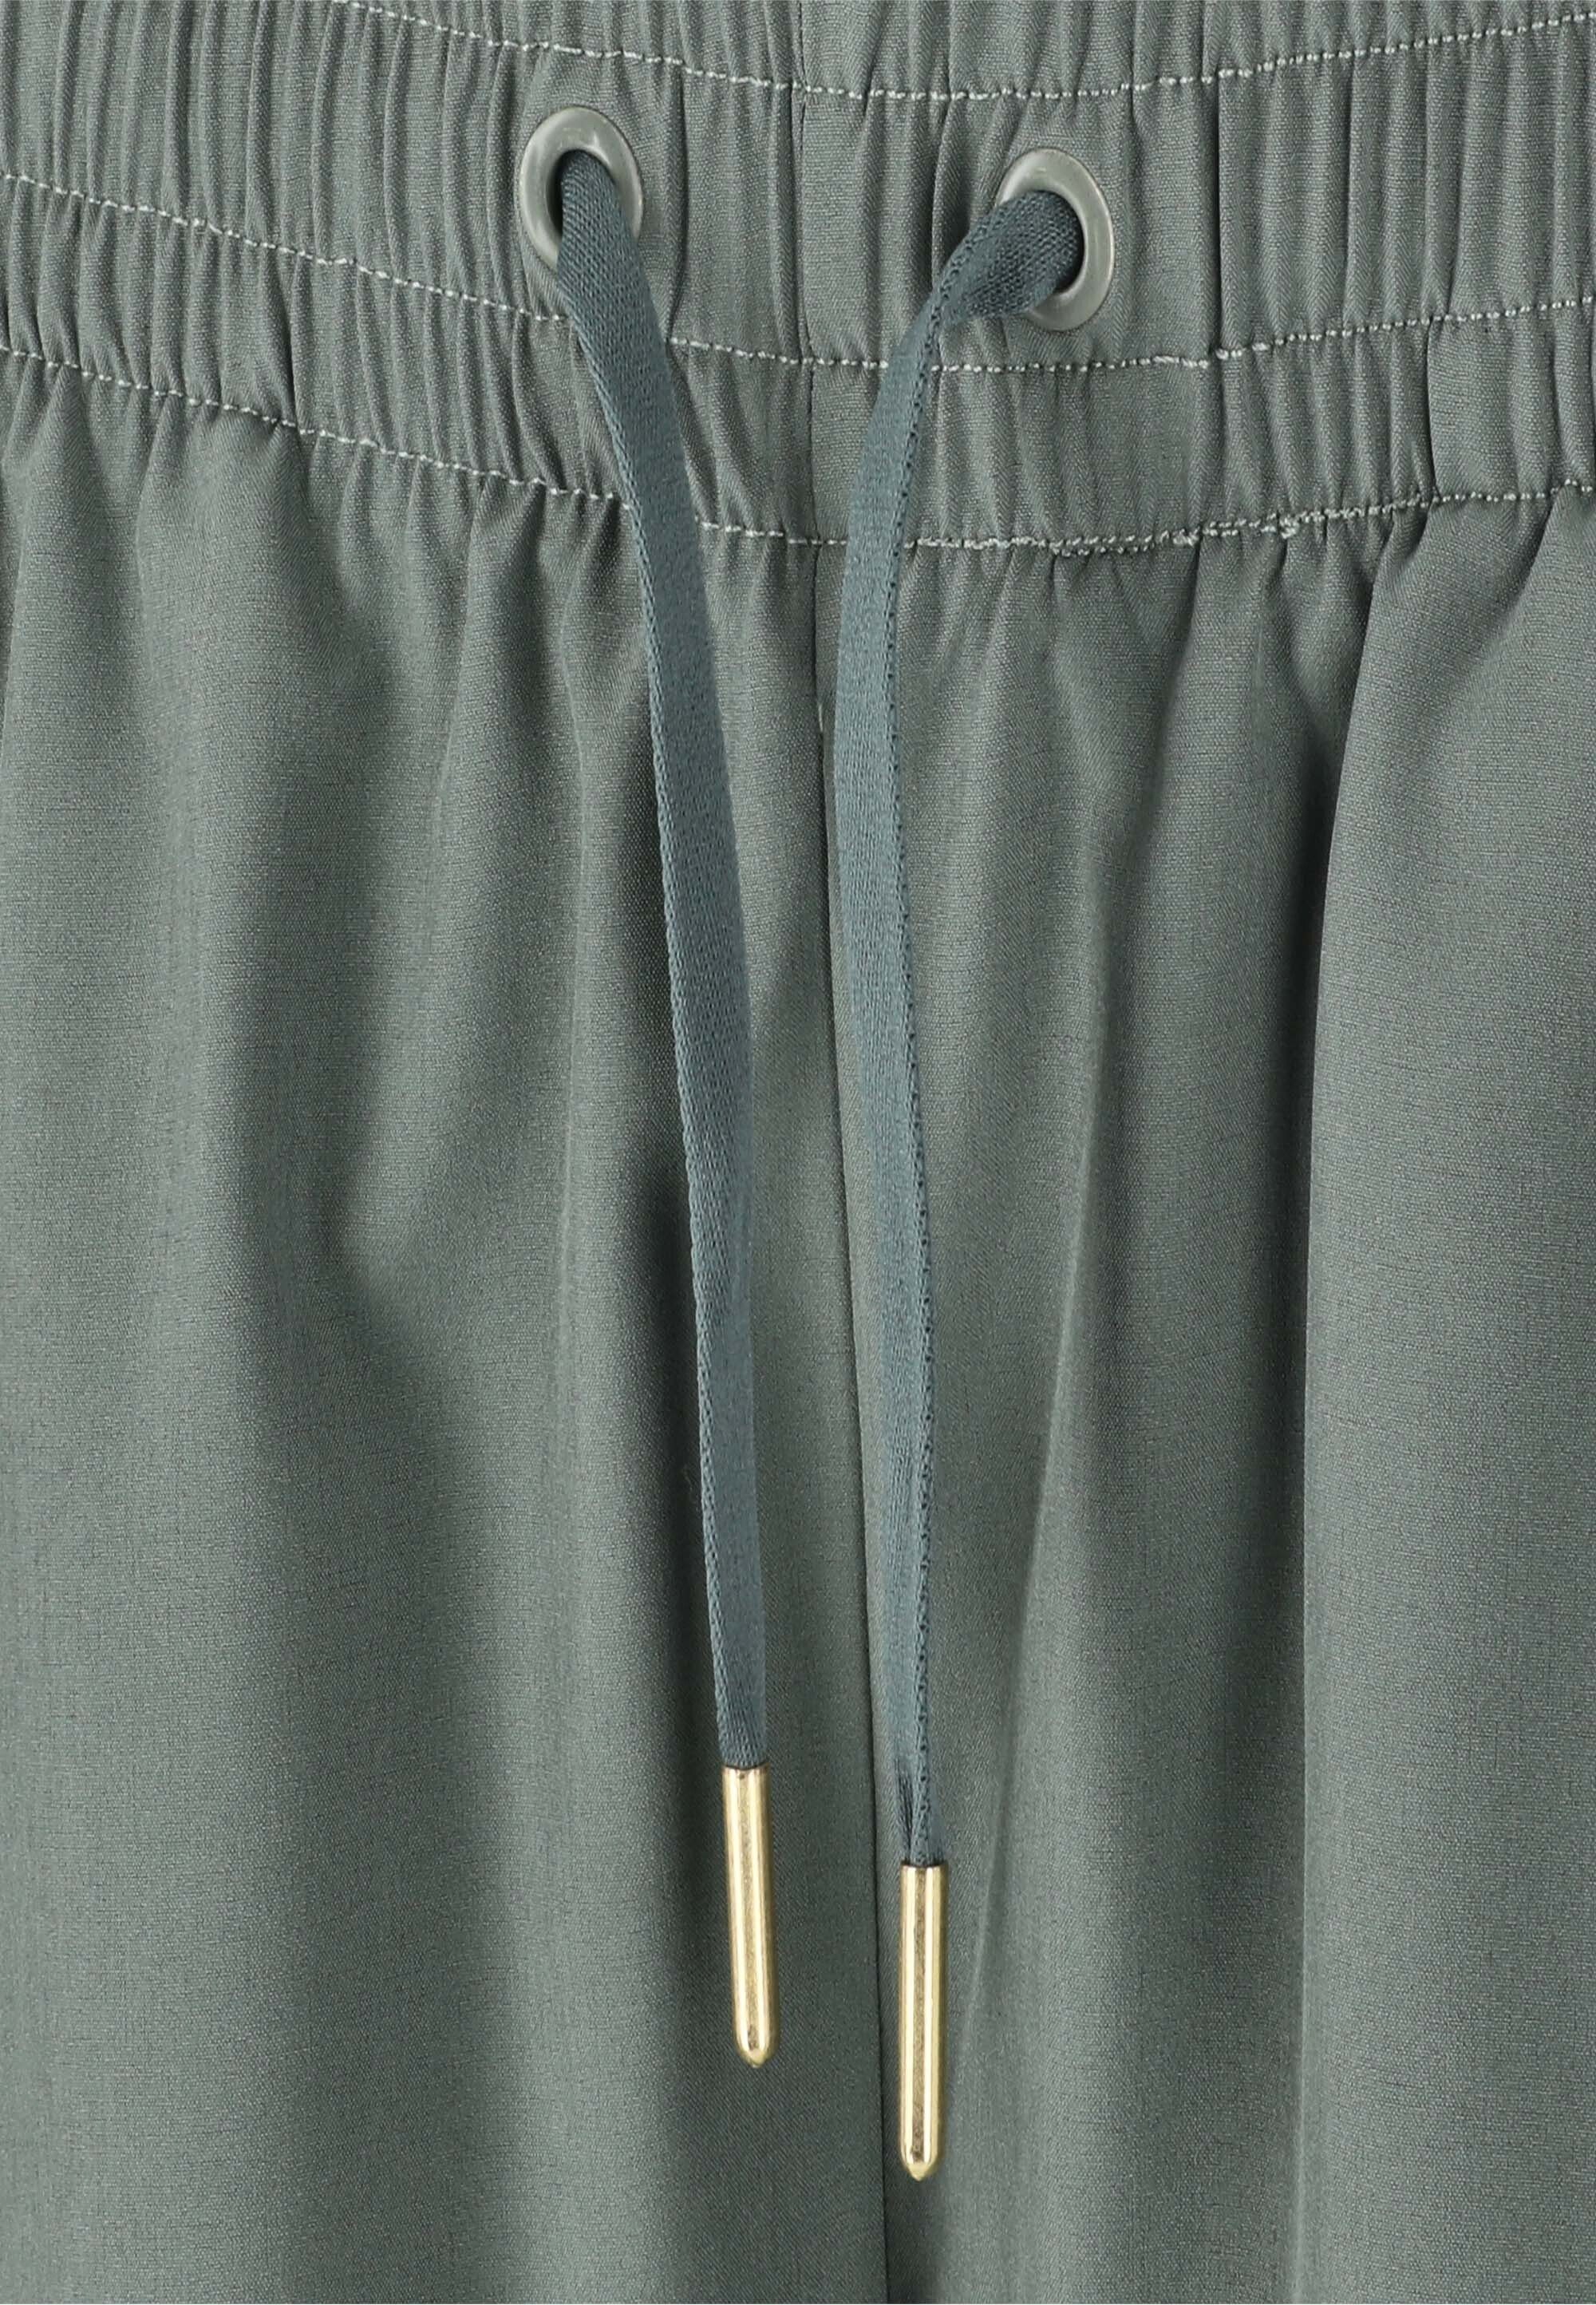 praktischen mit ENDURANCE Taschen Shorts dunkelgrün Eslaire